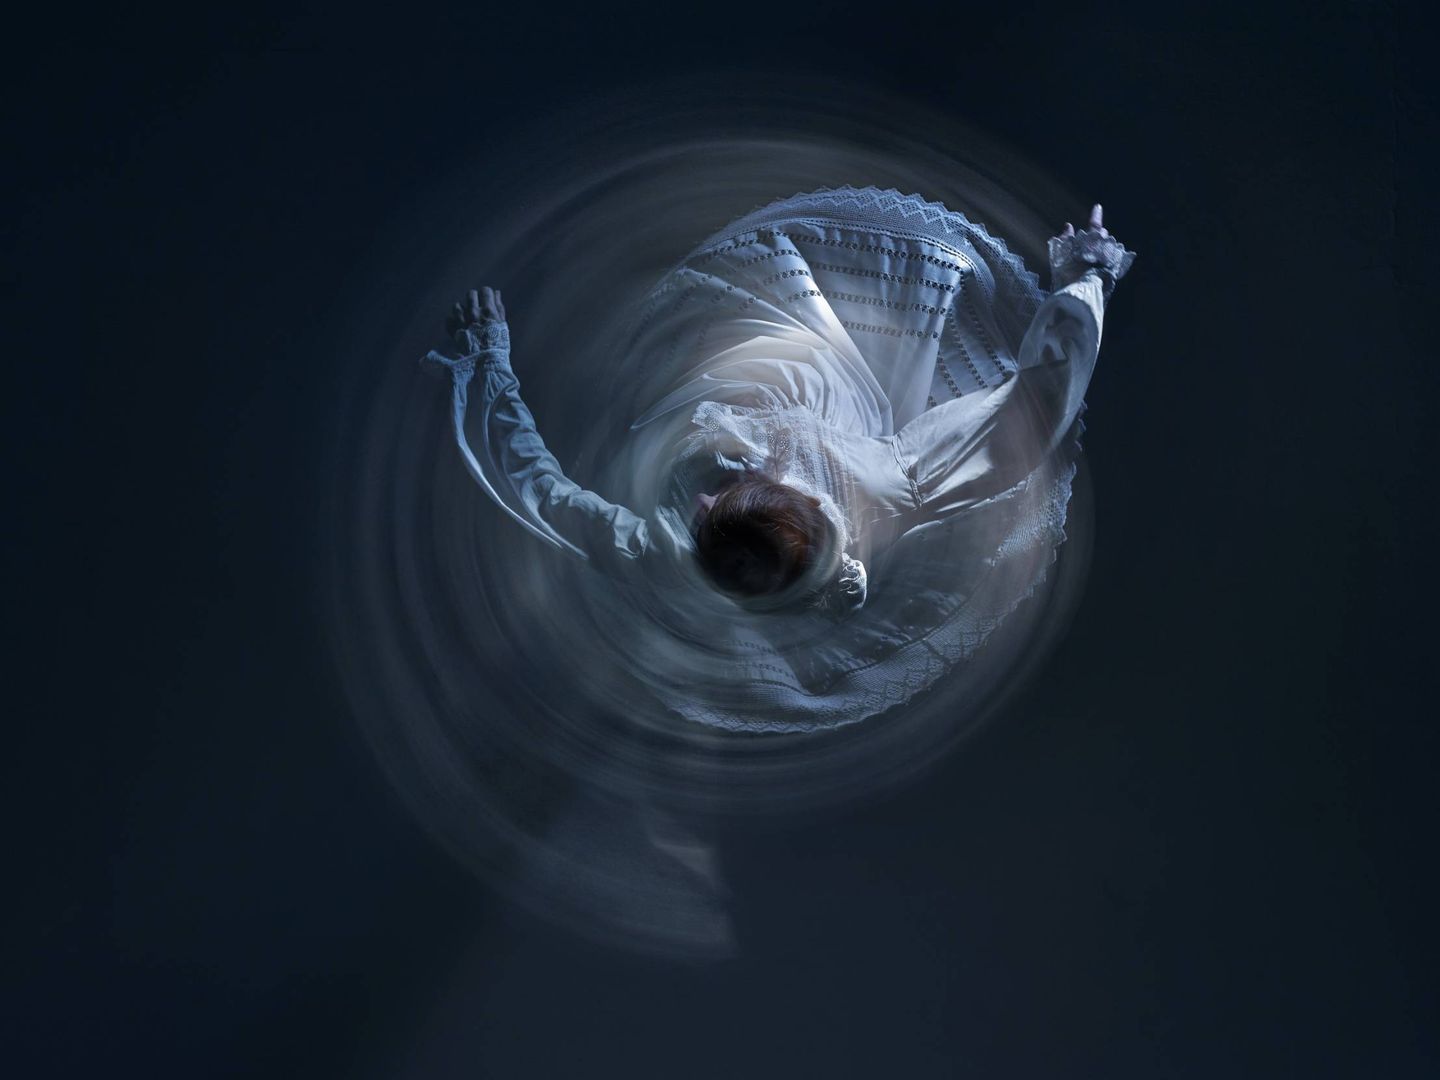 Una ‘dantzari’ captada con una cámara cenital que reflejaba el símil de un electrón atrapado ‘bailando’ alrededor del núcleo atómico. (Foto cedida)